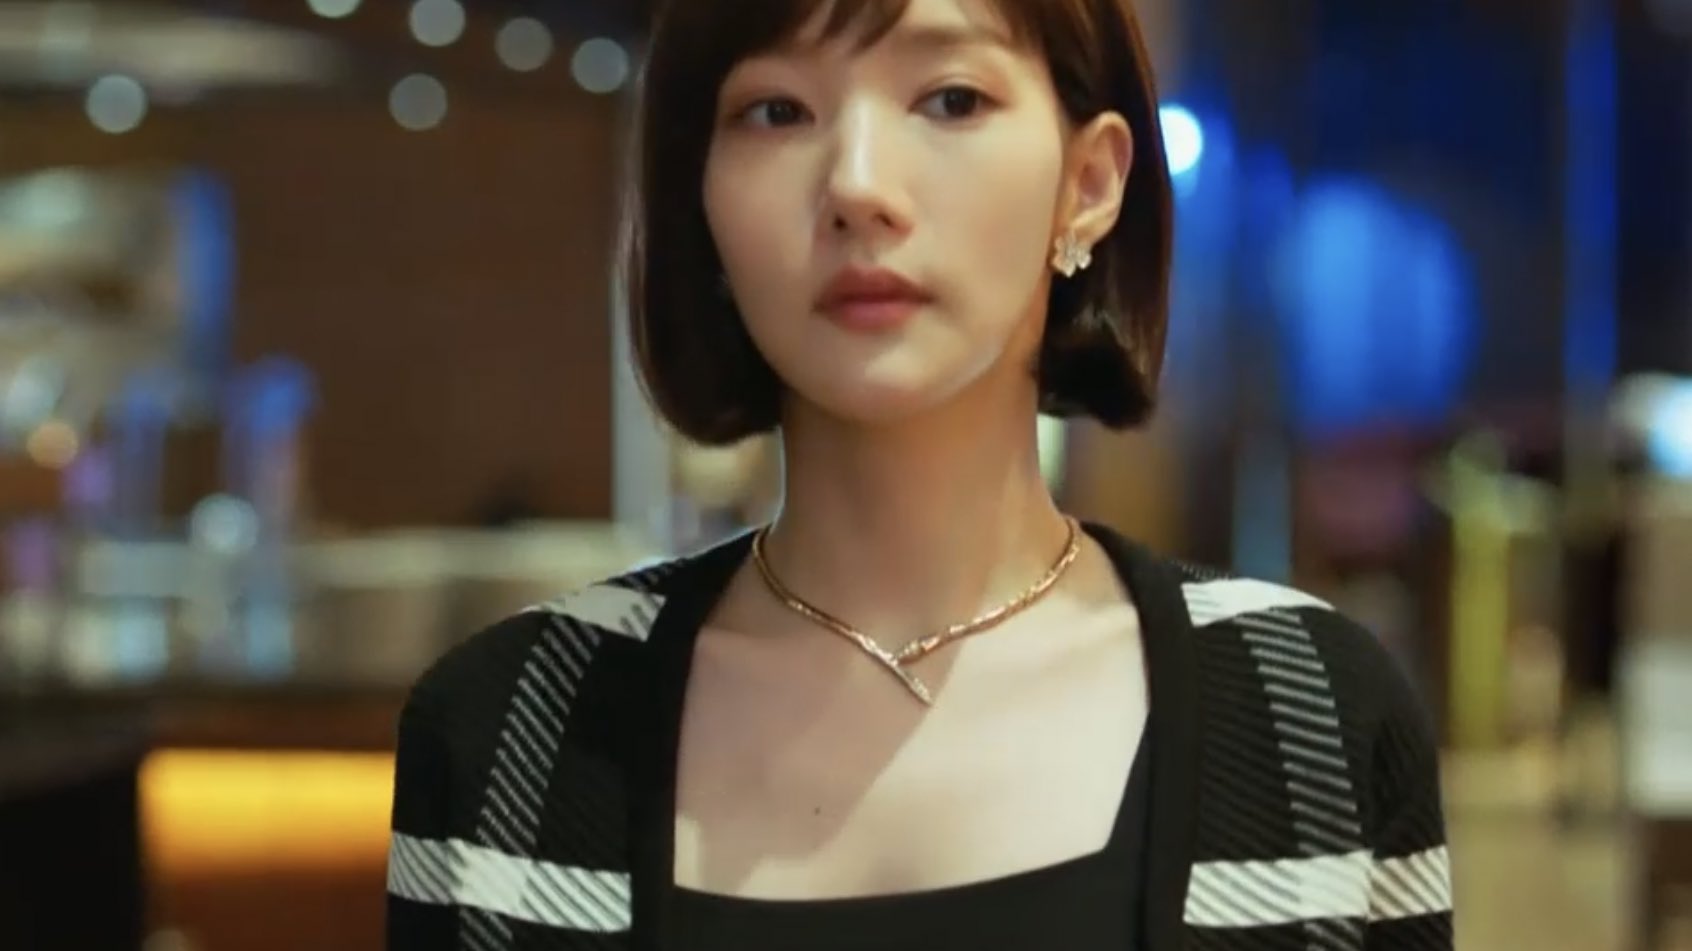 Phim mới của Park Min Young dẫn đầu rating nhưng nhan sắc nữ chính gây hoang mang vì quá khác lạ!-6